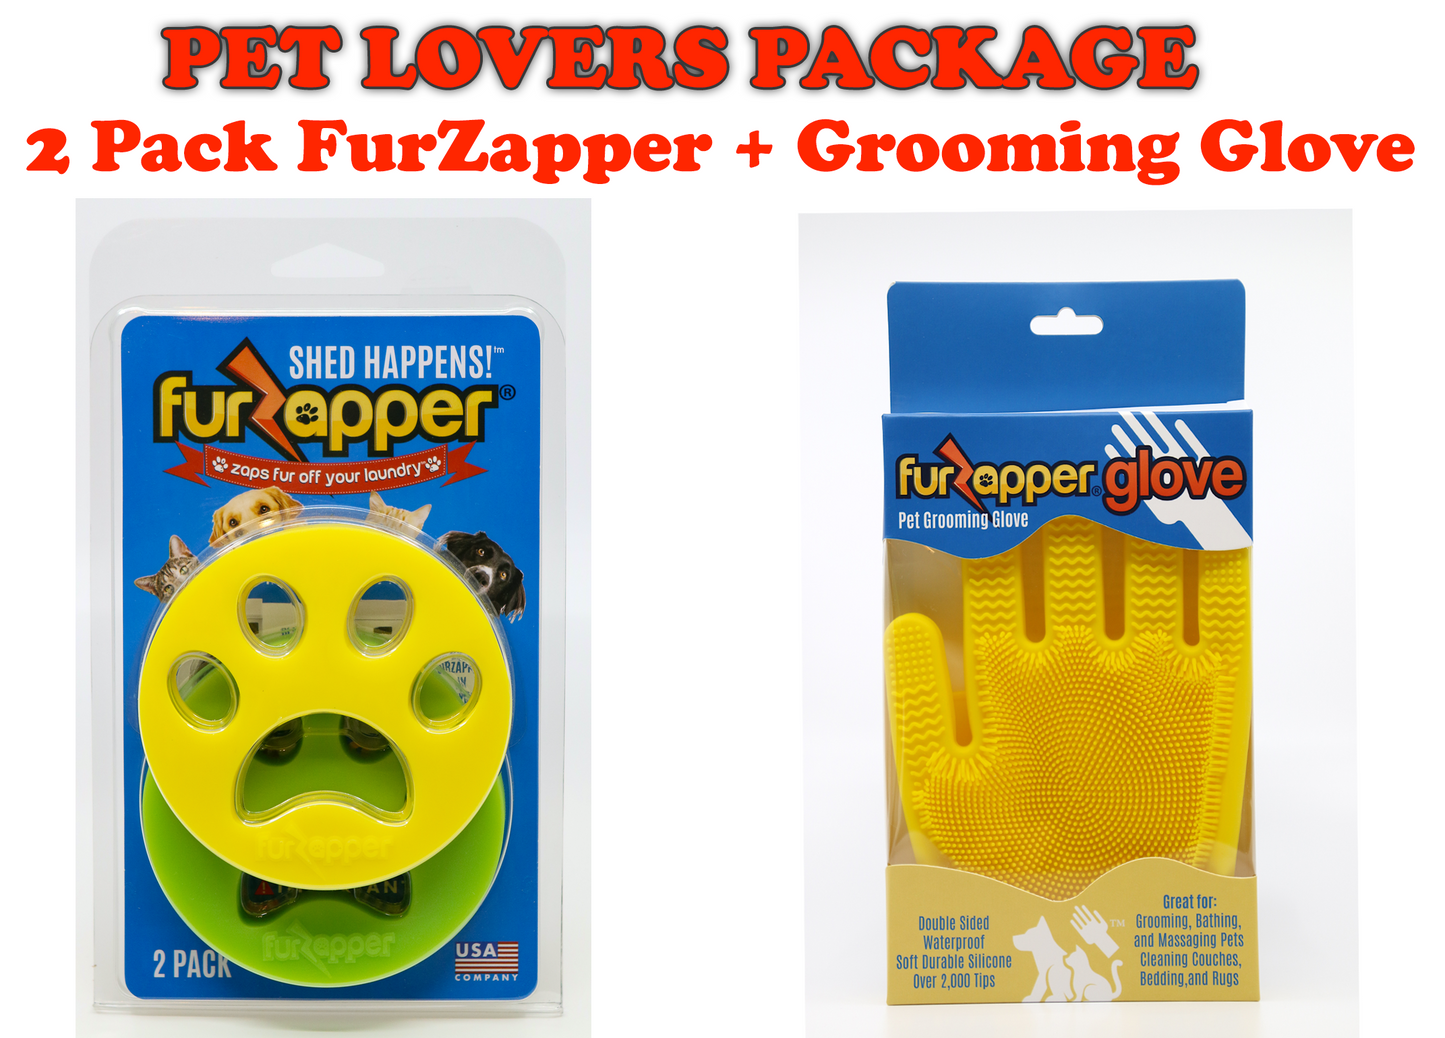 PET LOVERS PACKAGE BUNDLE  2 Pack FurZapper + Grooming Glove